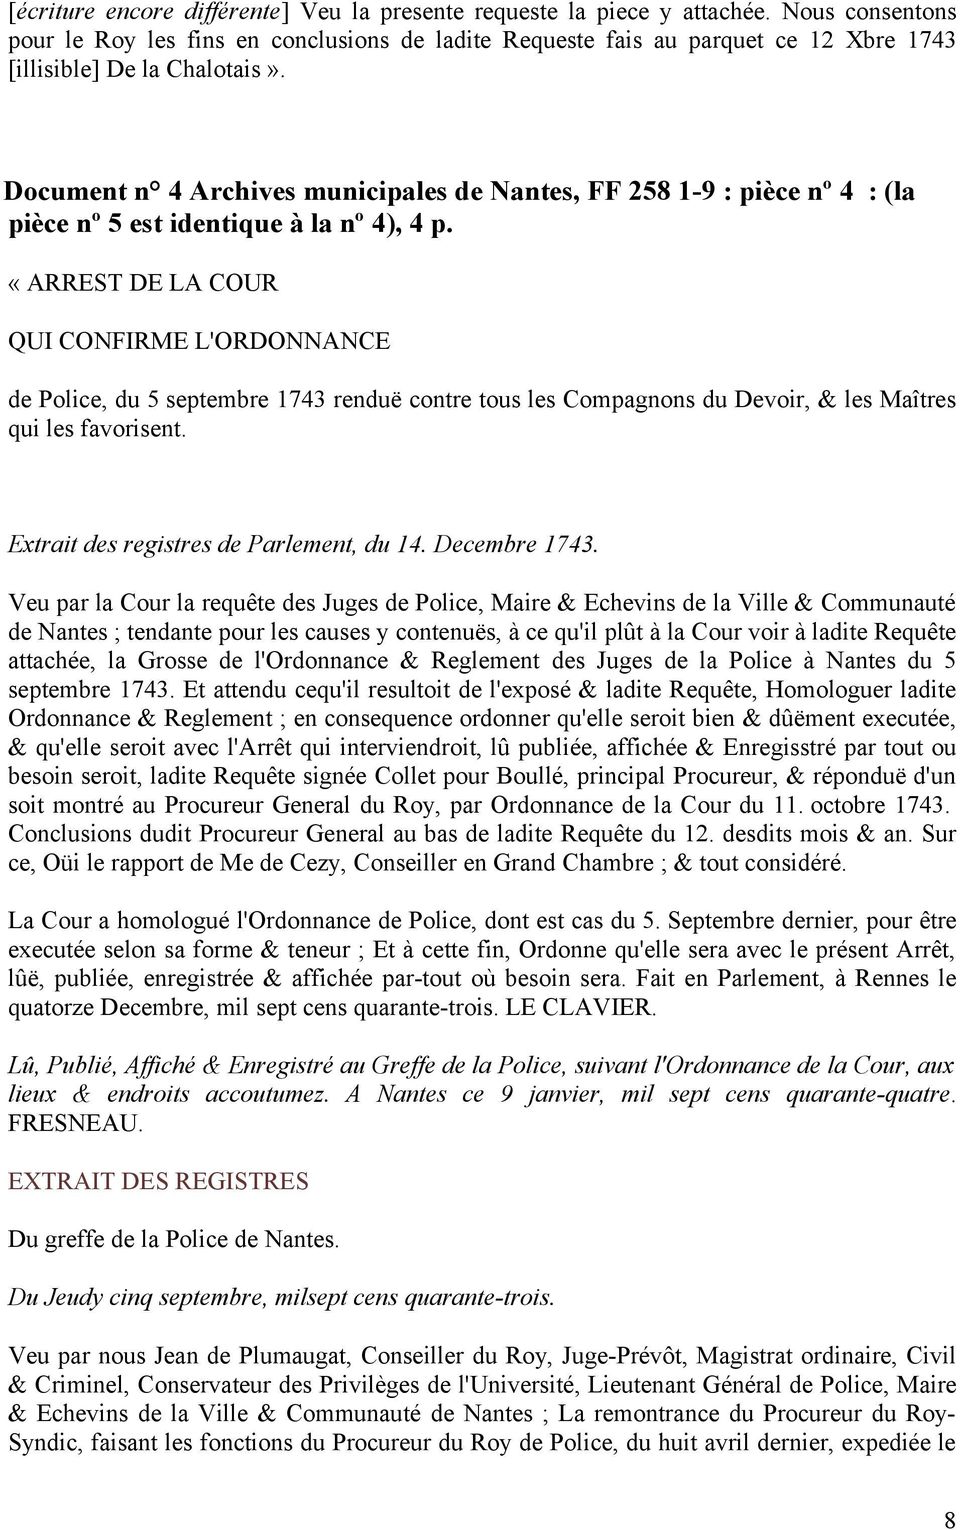 Document n 4 Archives municipales de Nantes, FF 258 1-9 : pièce nº 4 : (la pièce nº 5 est identique à la nº 4), 4 p.